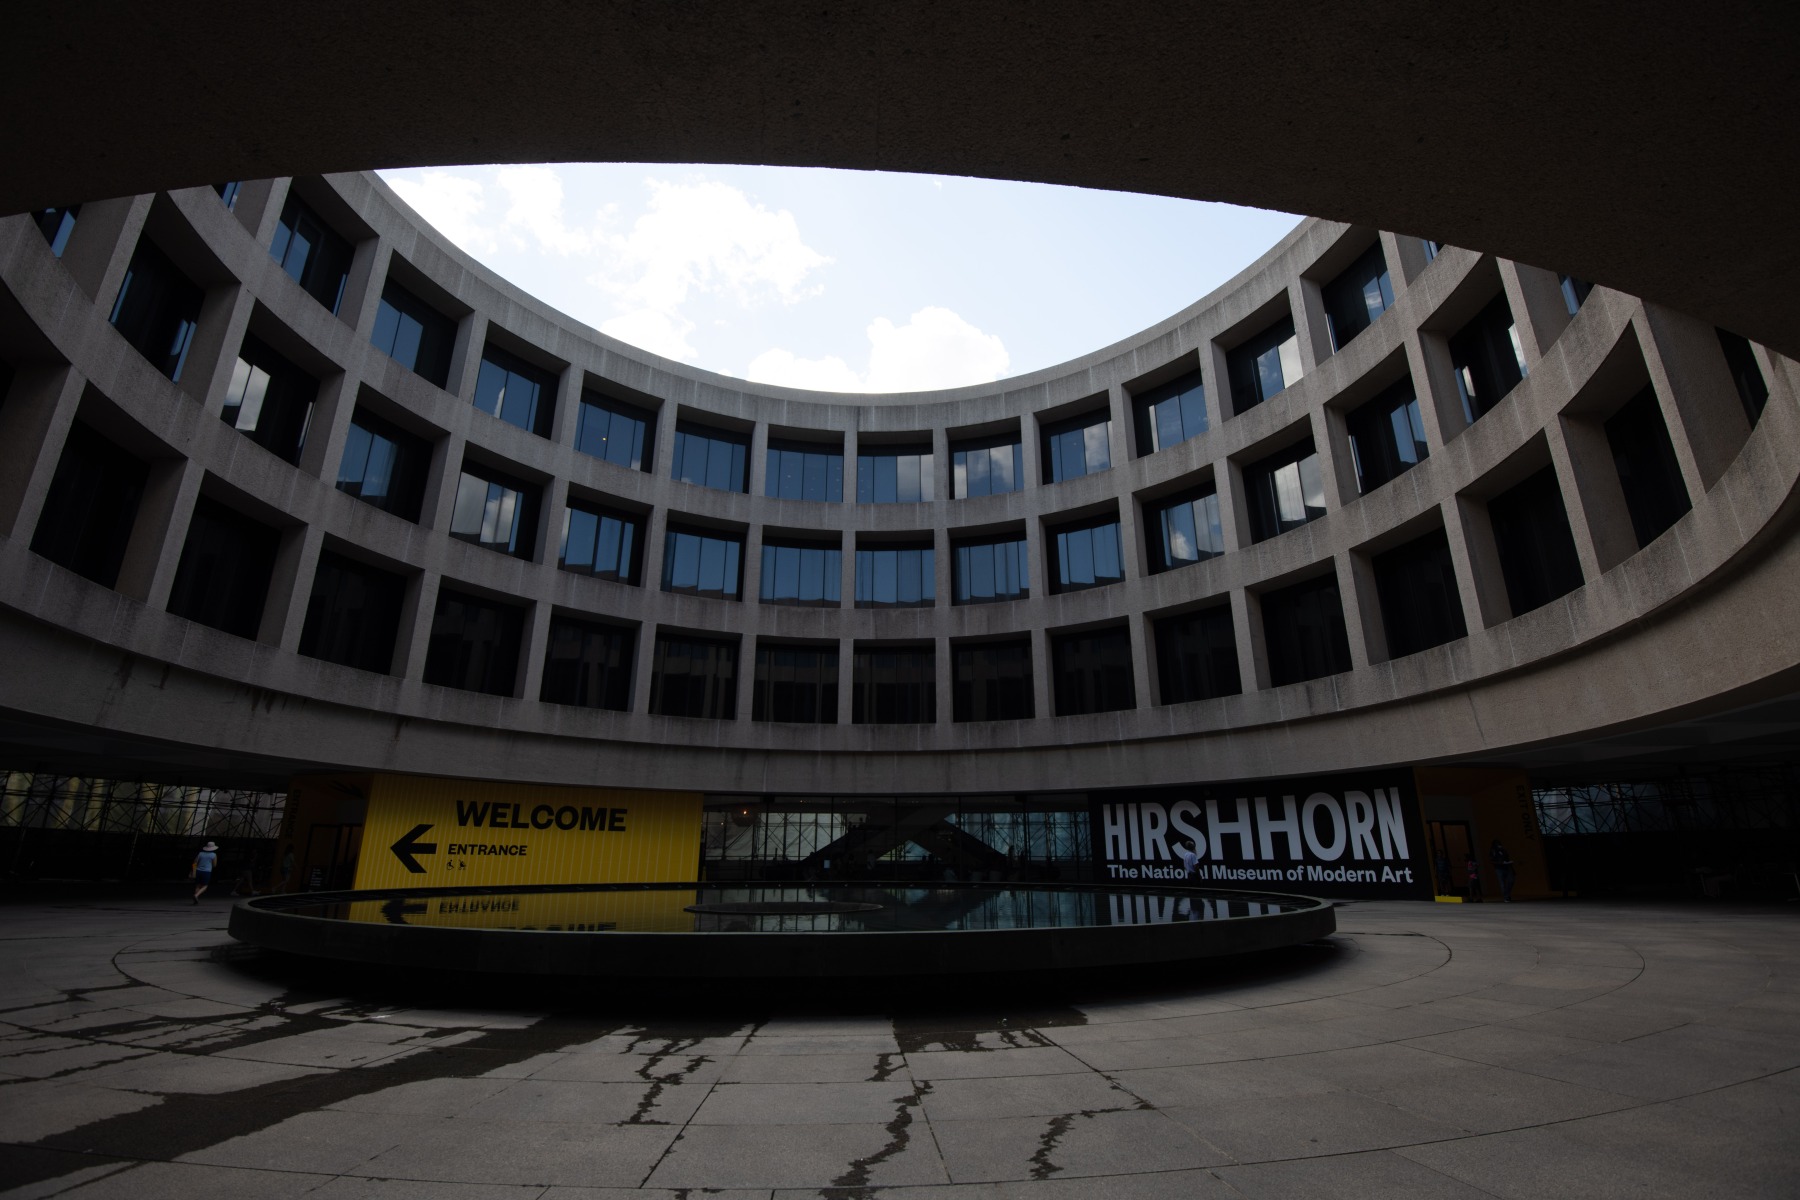 Day 3 – Hirshhorn Museum of Modern Art